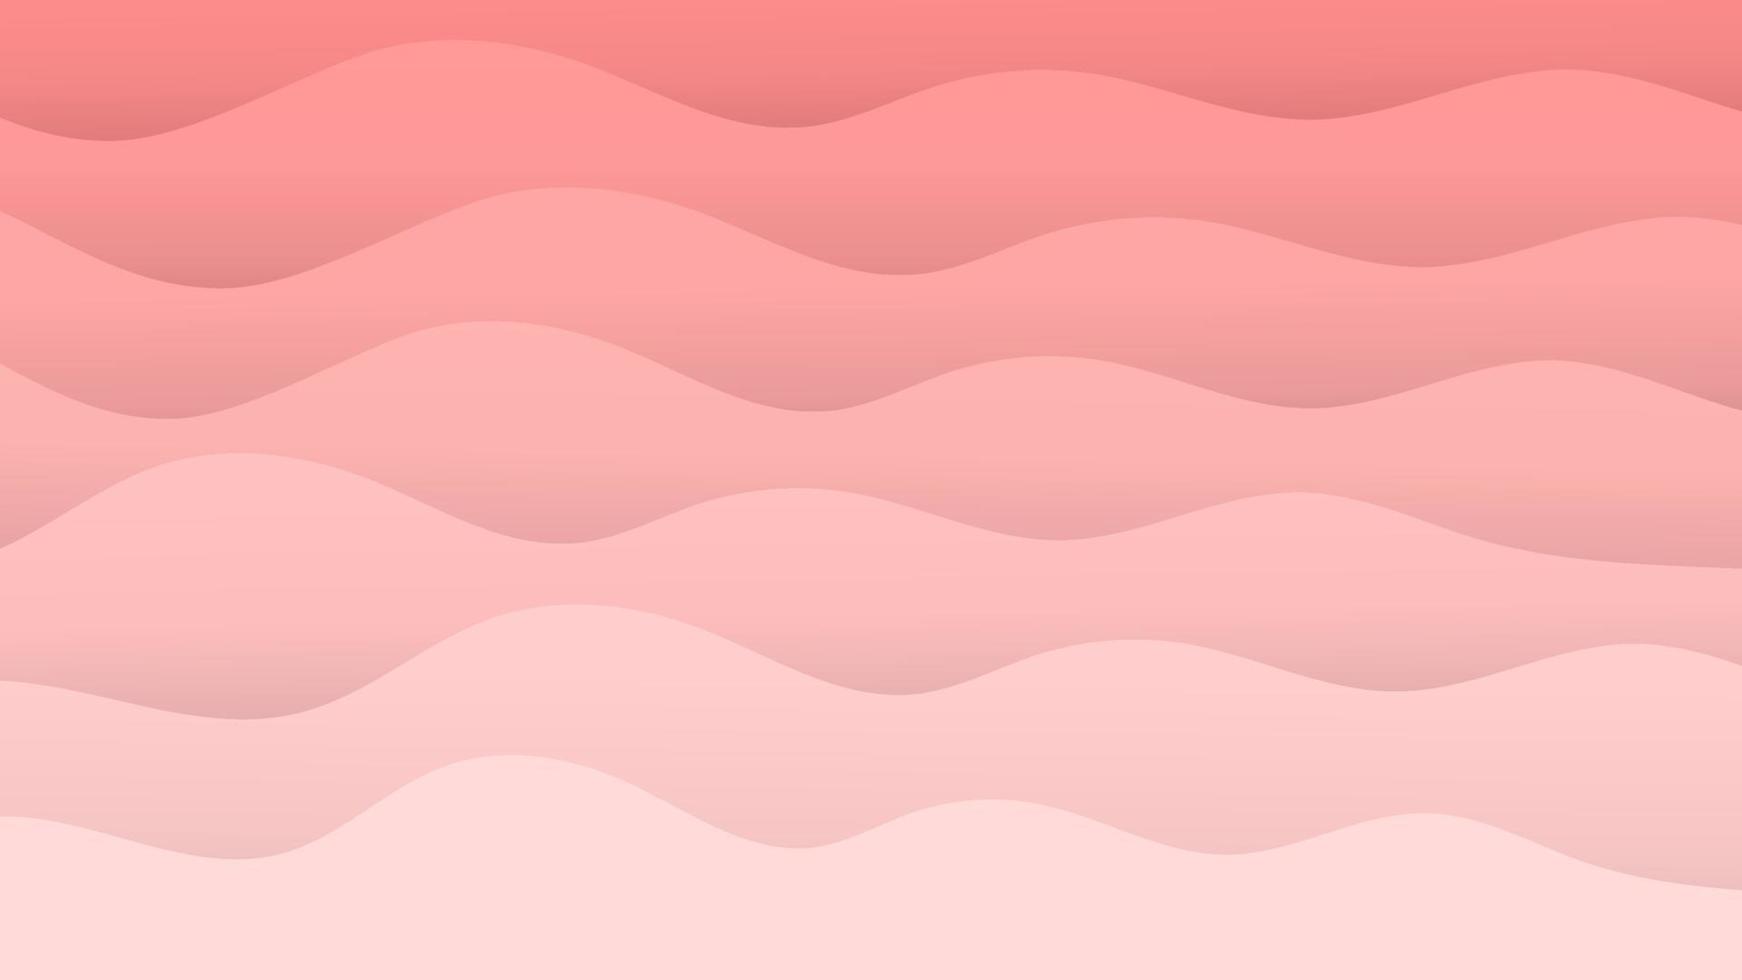 Vektorgrafik rosa Wellenmuster, sanfte Pastellwellen mit Farbverlauf, abstrakter rosa Muschelstil vektor